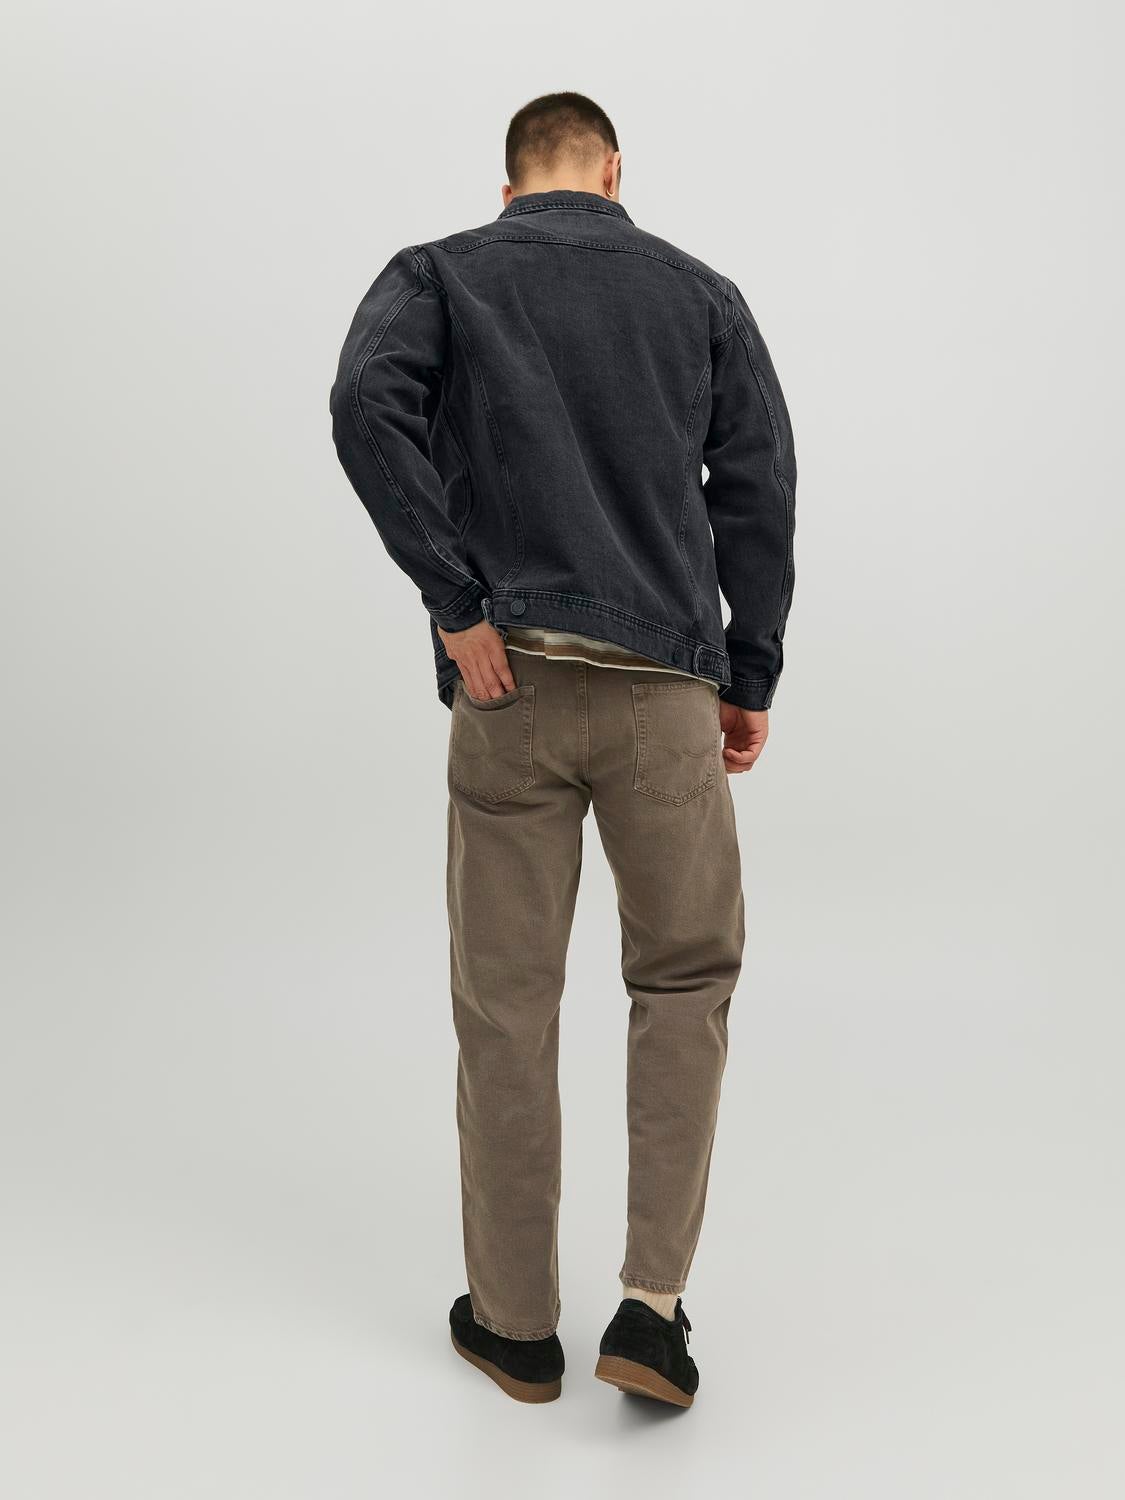 Wrangler Blanket Lined Denim Jacket - Men's - Clothing